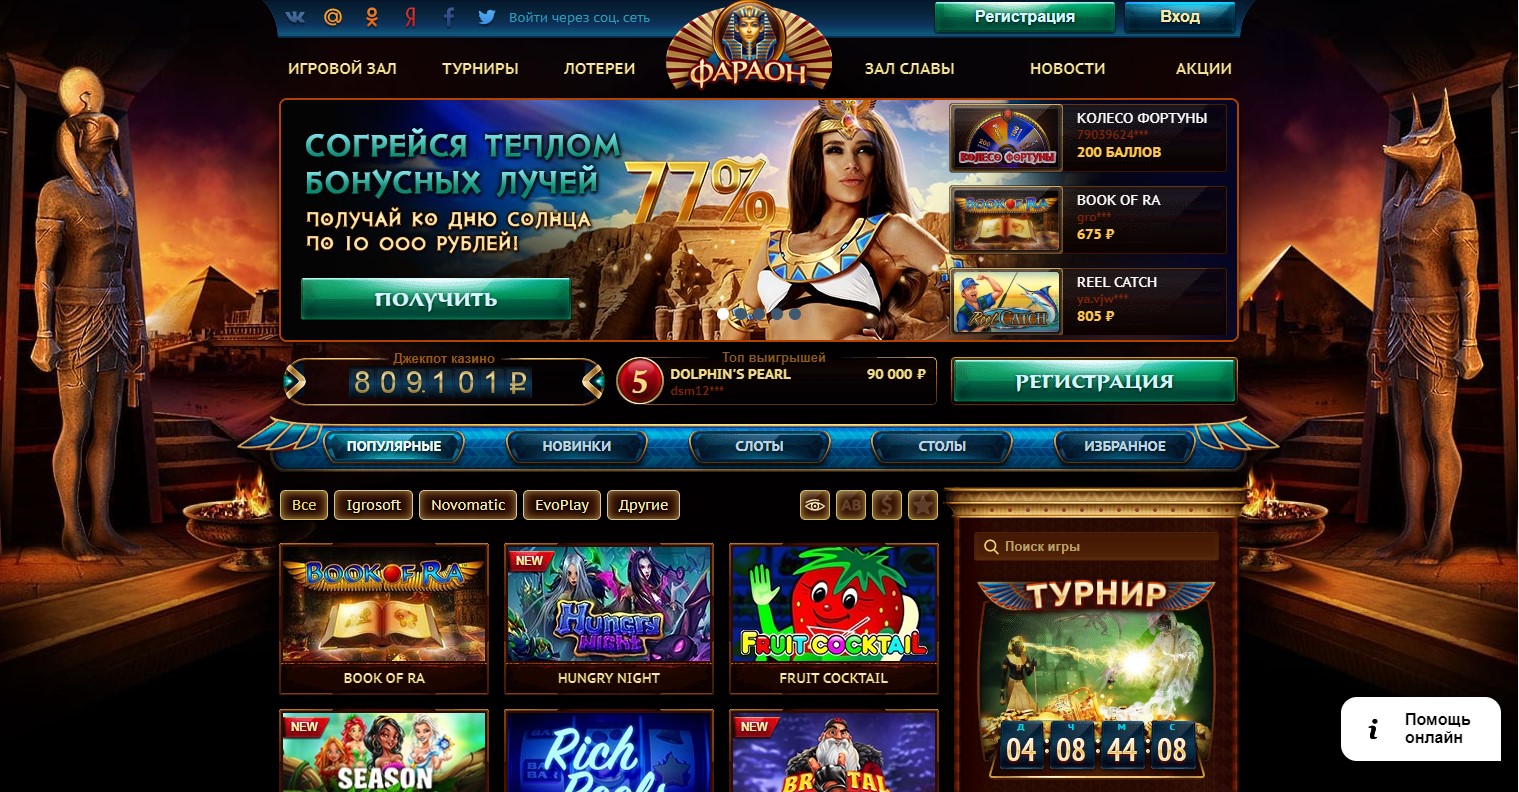 Фараон казино онлайн играть официальный игровые автоматы.java.id